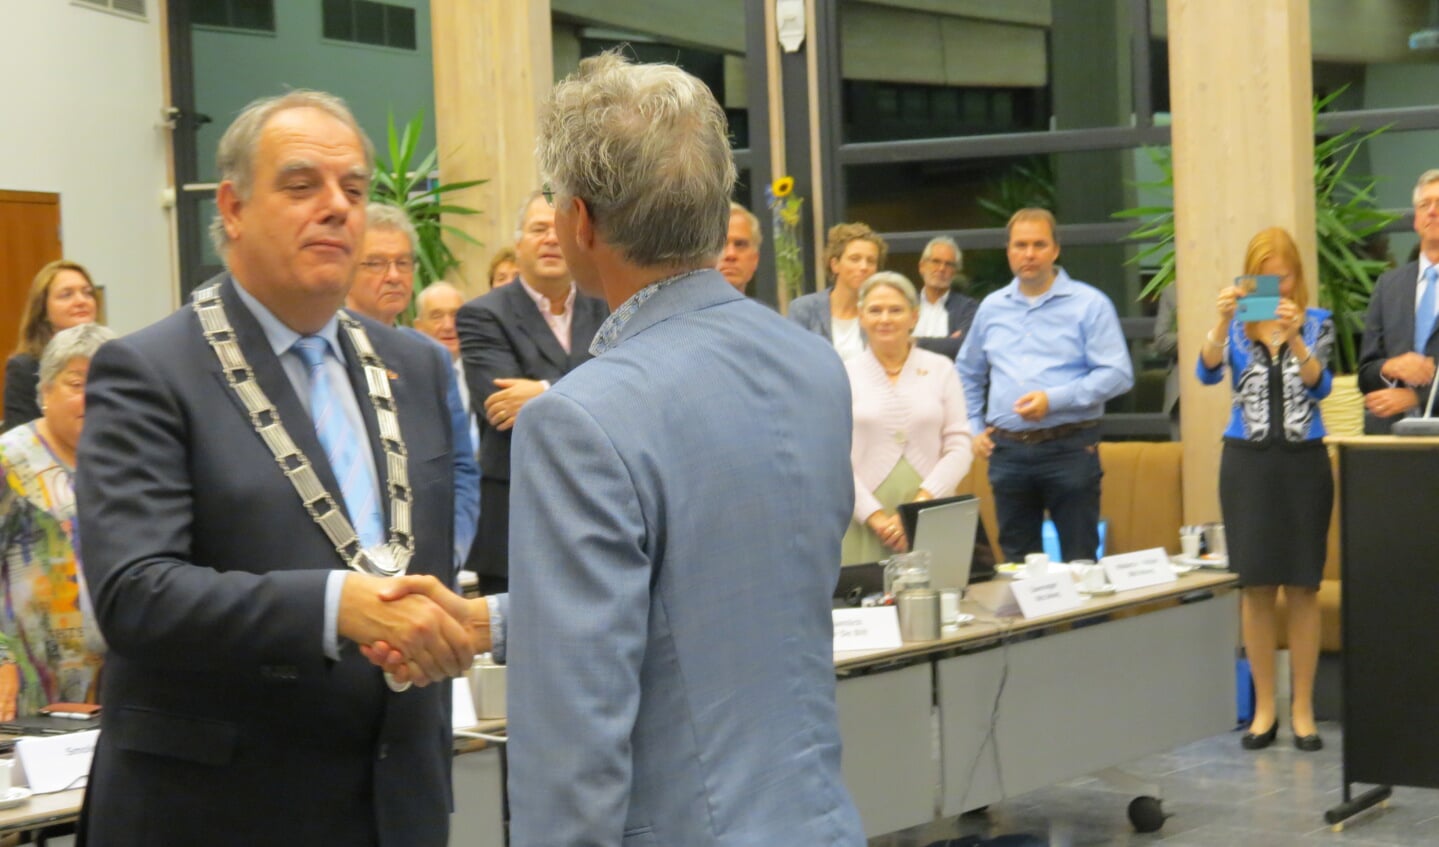 Burgemeester Bas Verkerk met de ambtsketting.